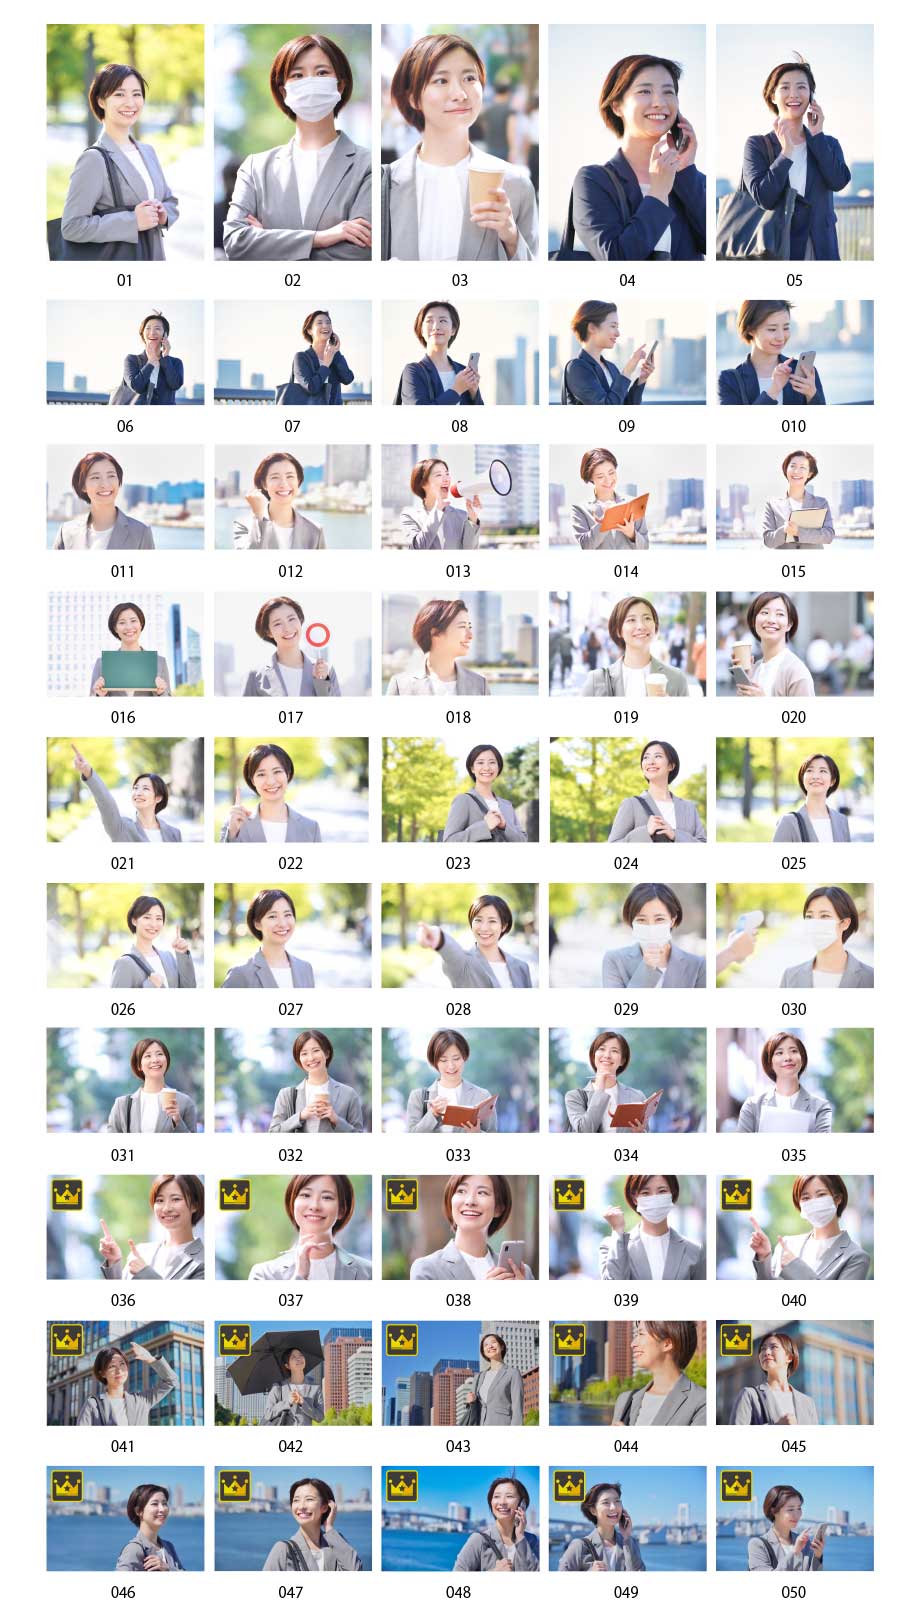 日本人女性ビジネスの写真